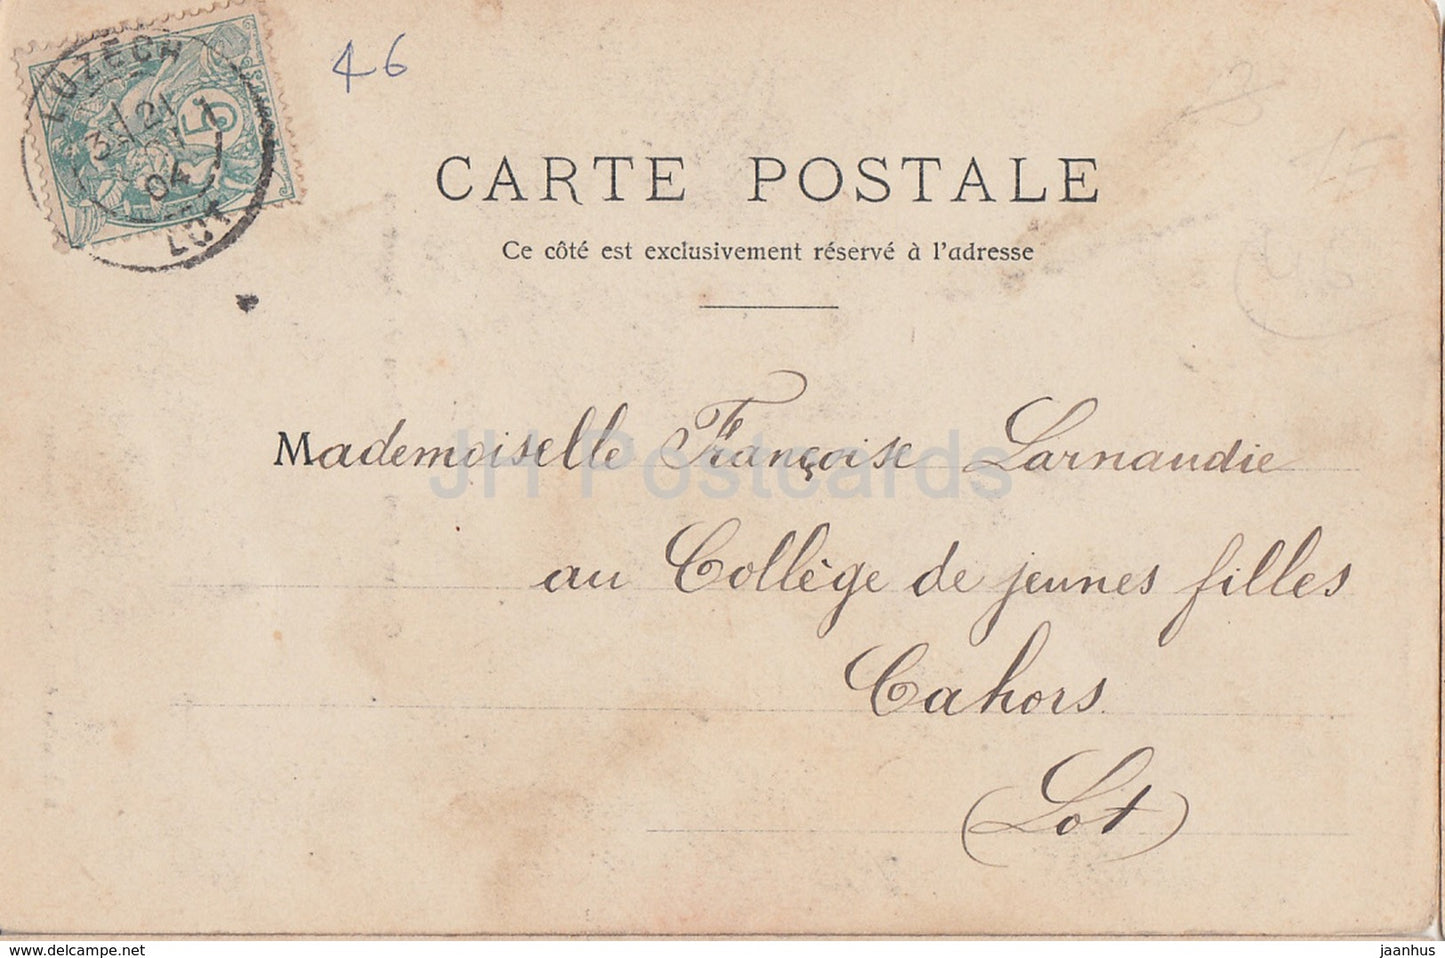 Caillac - Chateau de Lagrezette - castle - old postcard - 1904 - France - used